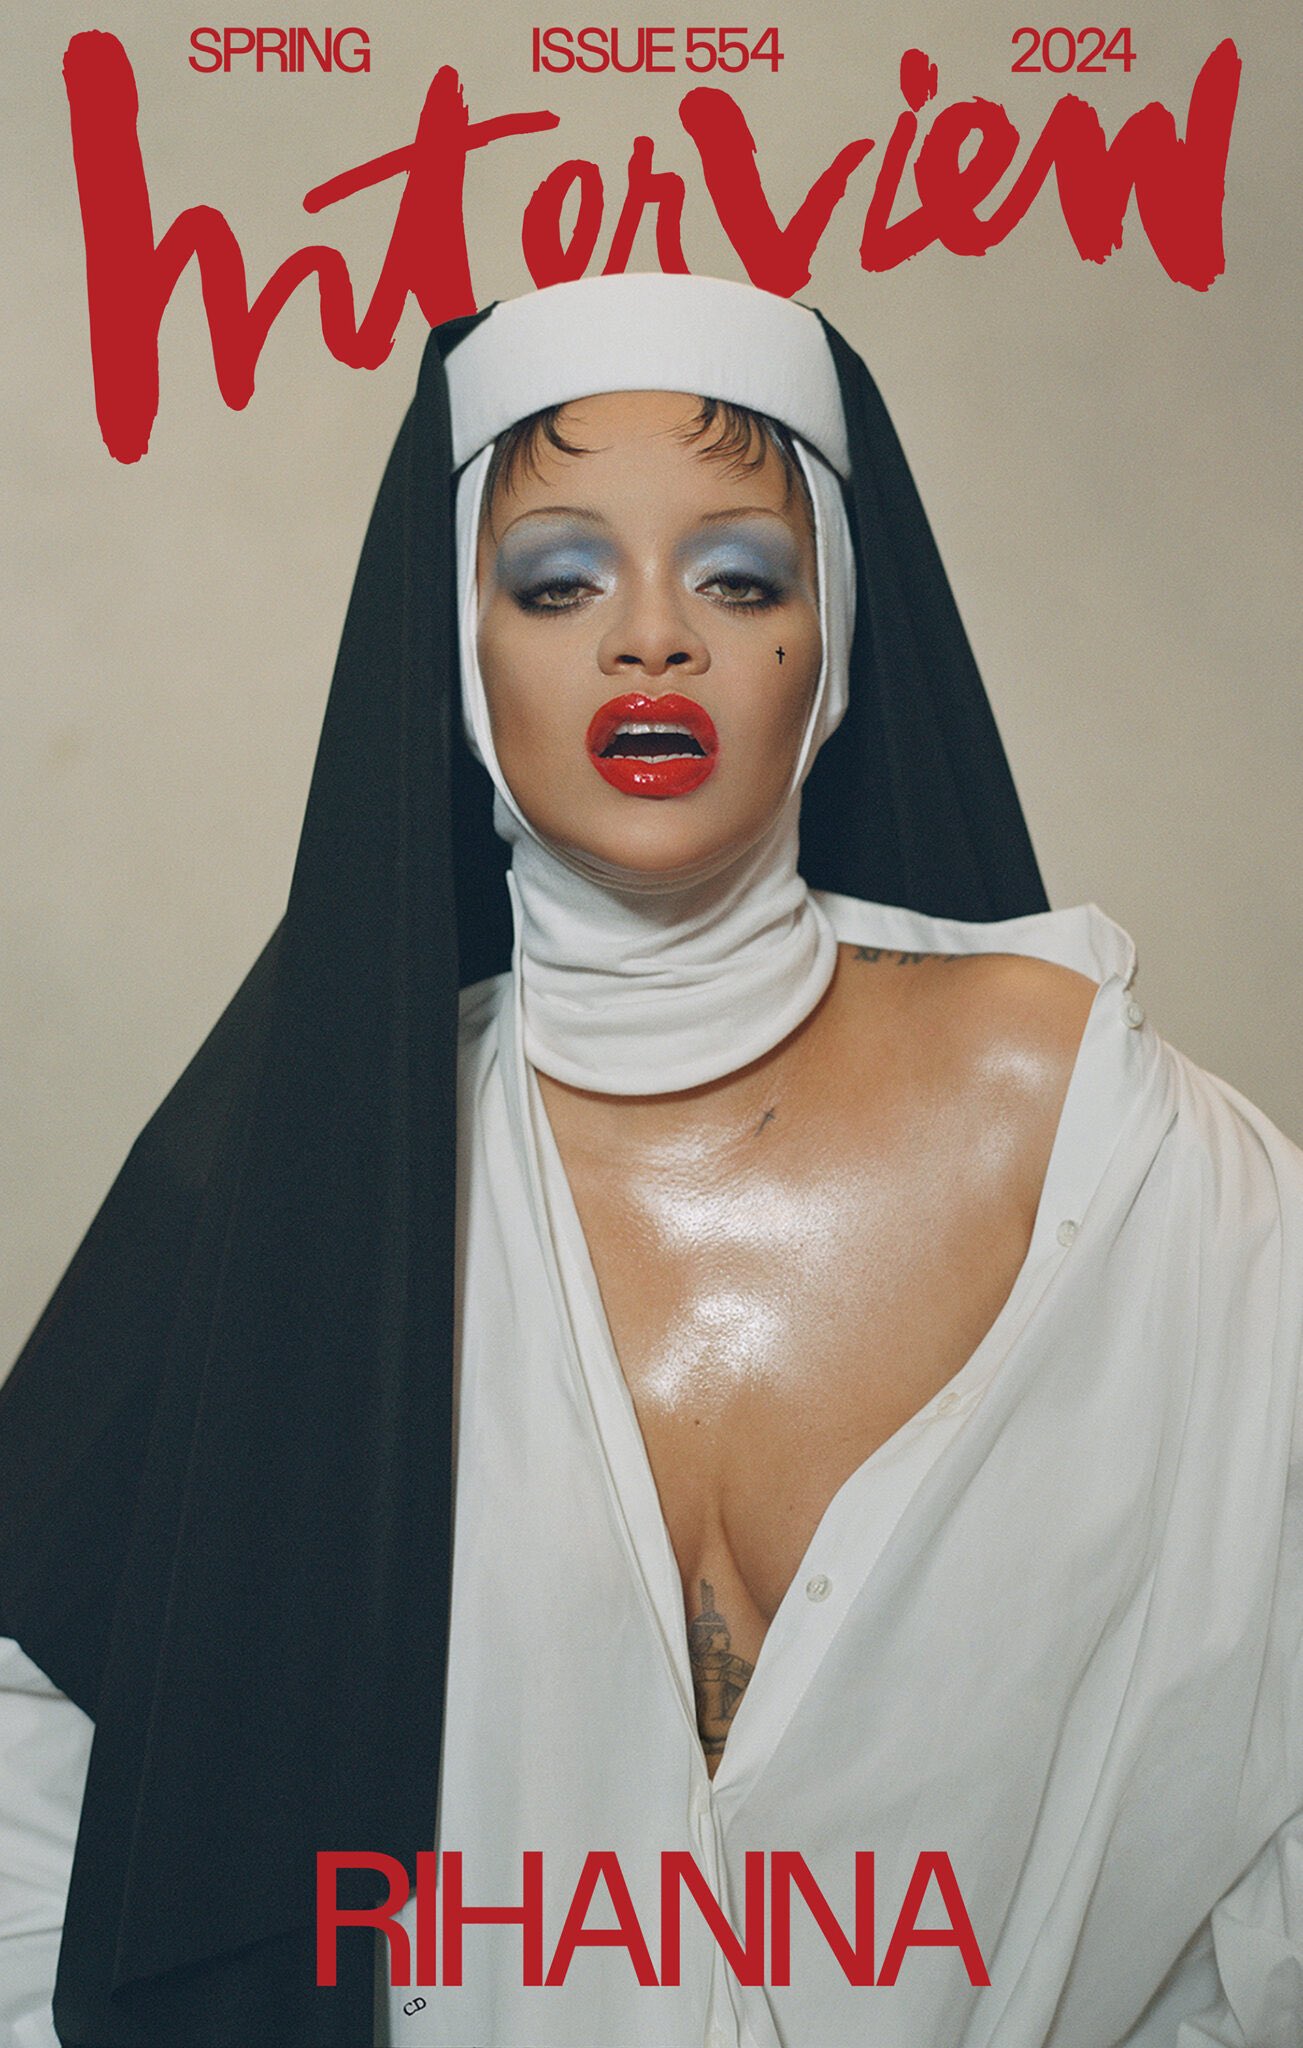 Rihanna faces backlash over photoshoot mocking Christianity